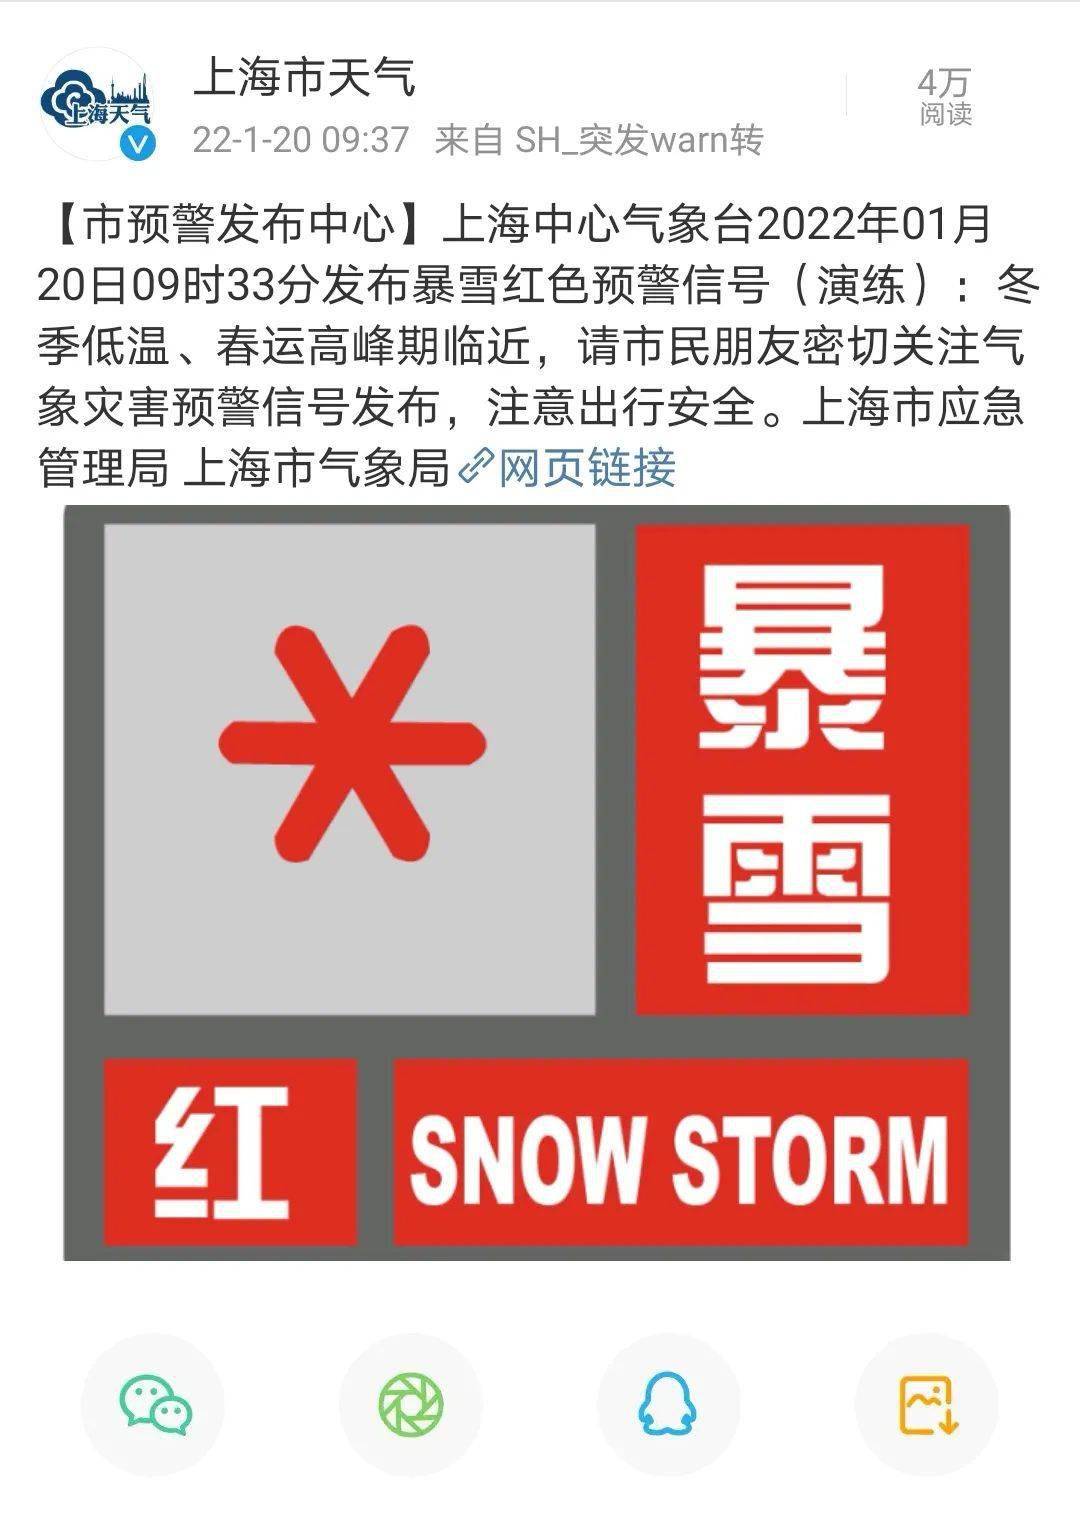 上海发布暴雪红色预警大批网友火速围观市气象局回应